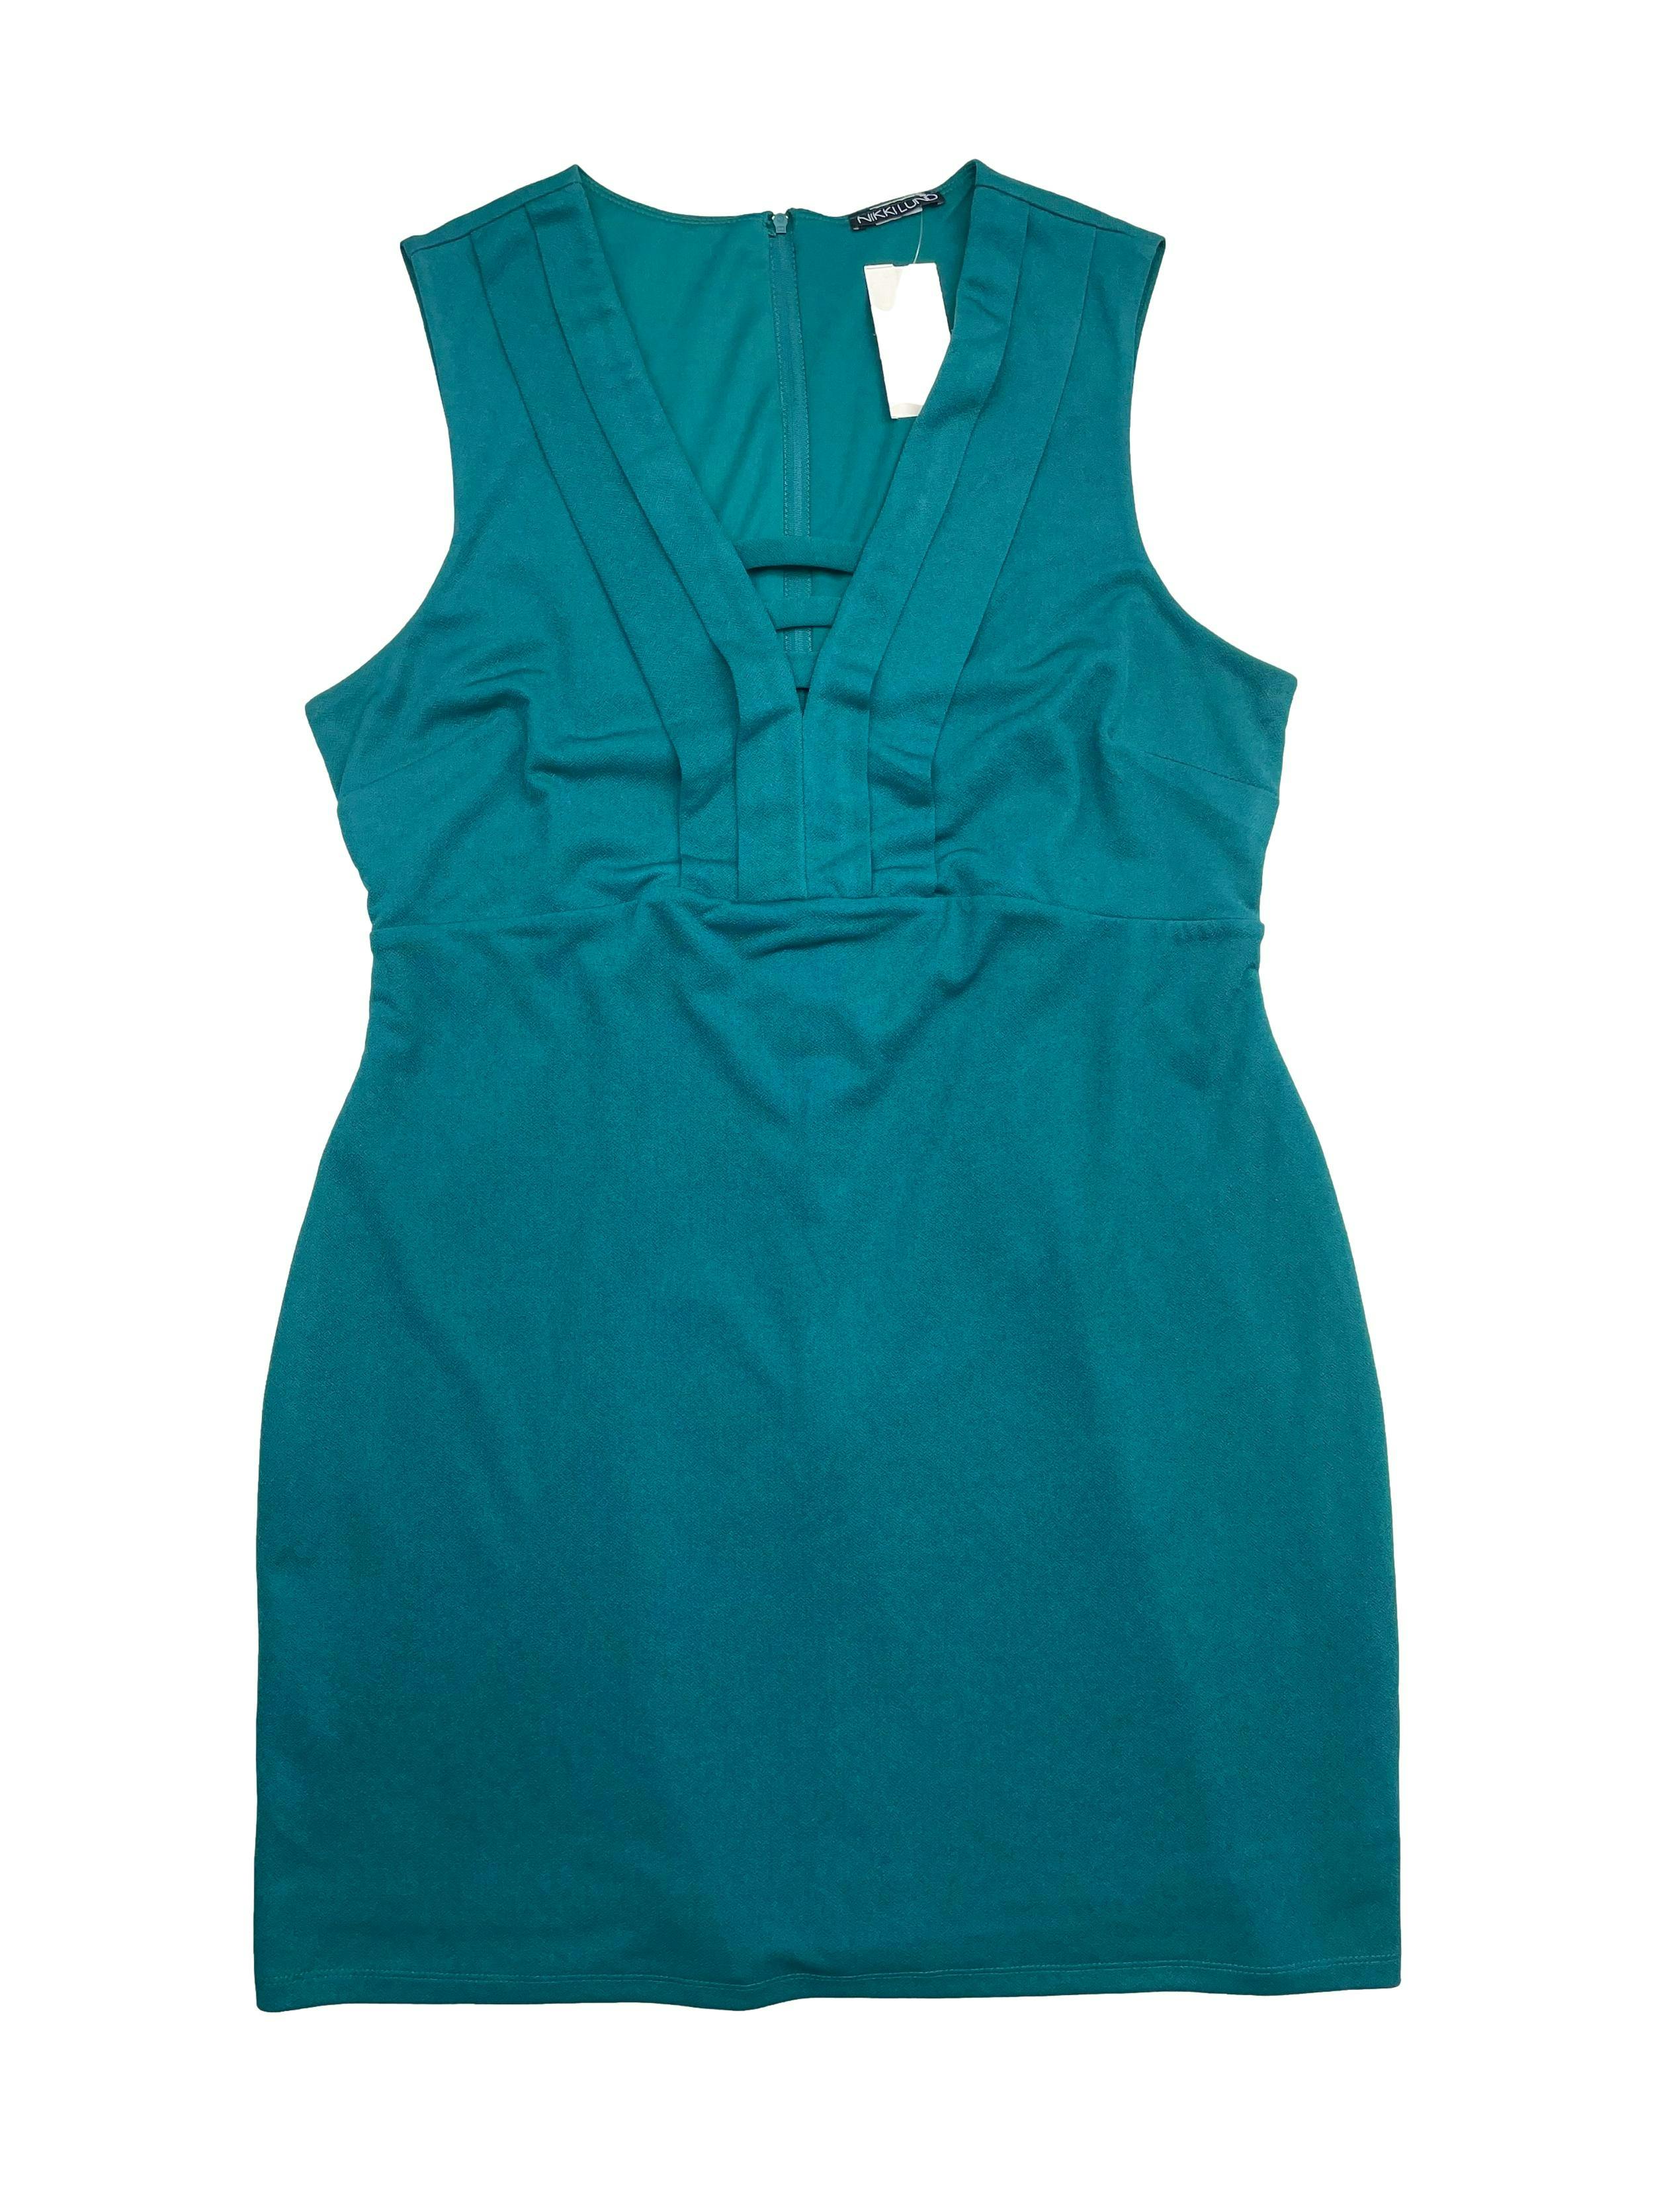 Vestido Nikkilund color verde con textura, forrado, cierre en la espalda,  escote en V con rejilla. Busto: 104cm, Largo: 88cm